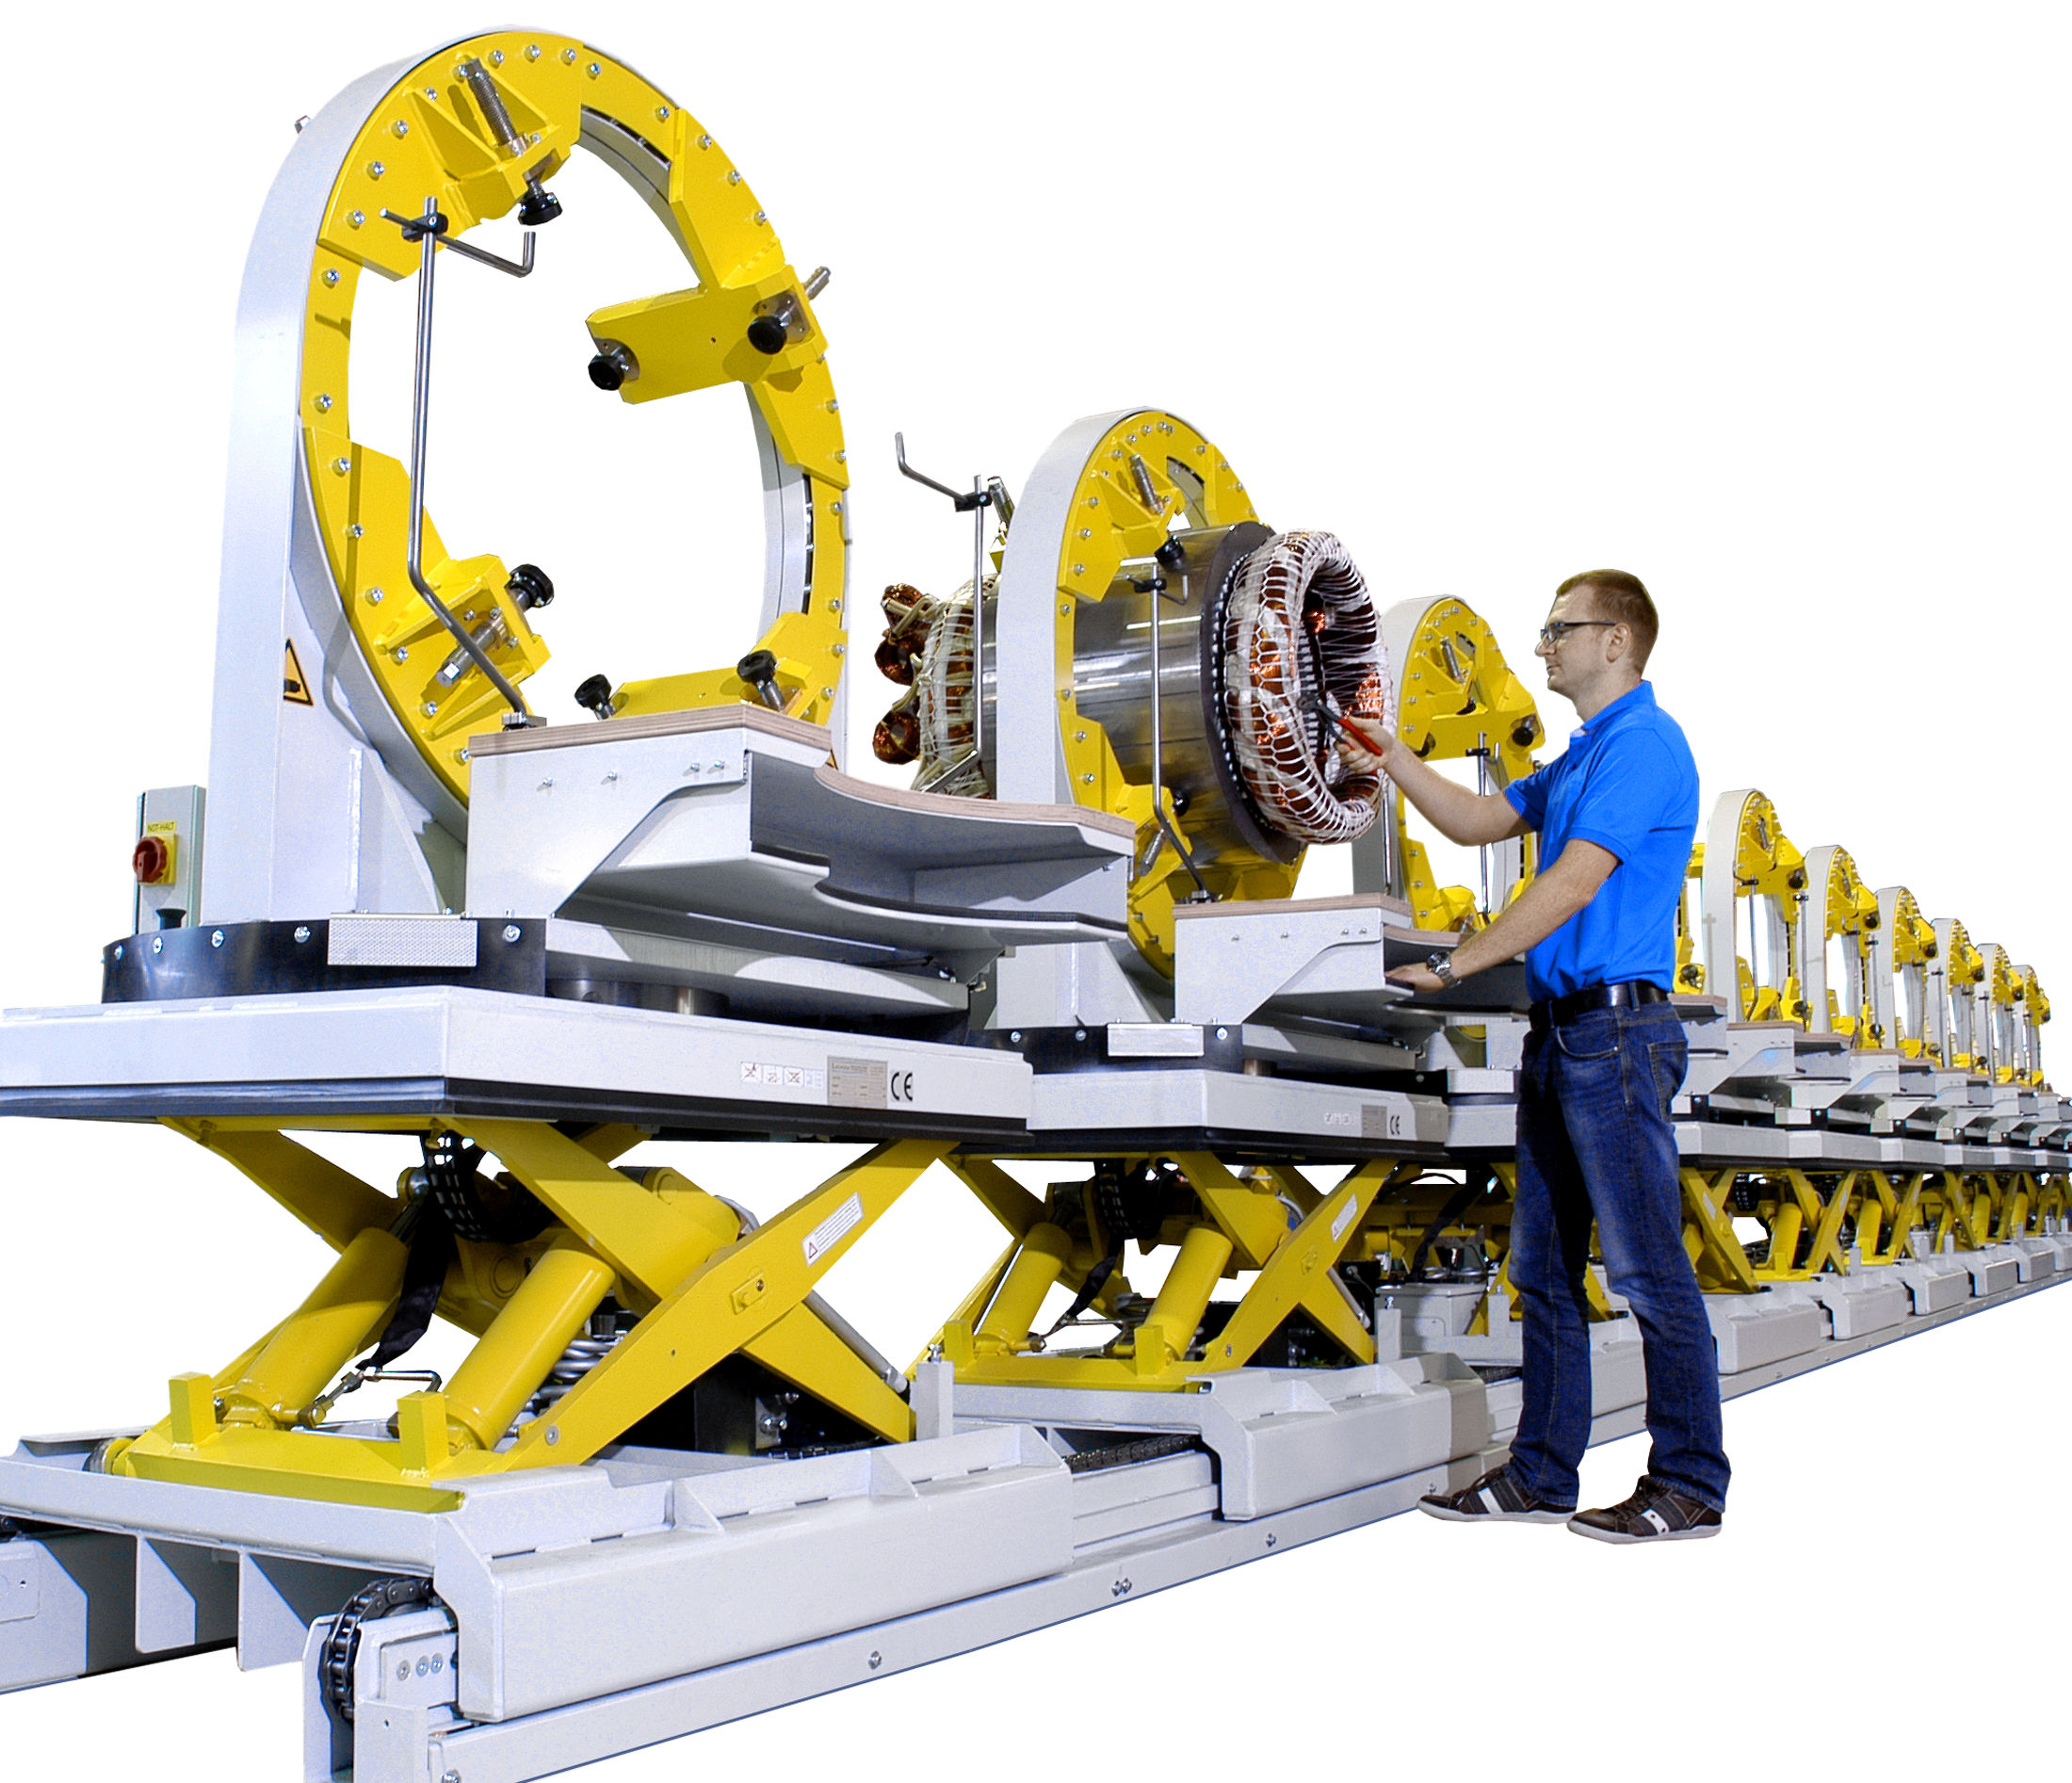 Leiritz ist als Maschinenbau Hersteller auf die Prduktion von innovativen Maschinenbaulösungen spezialisiert.